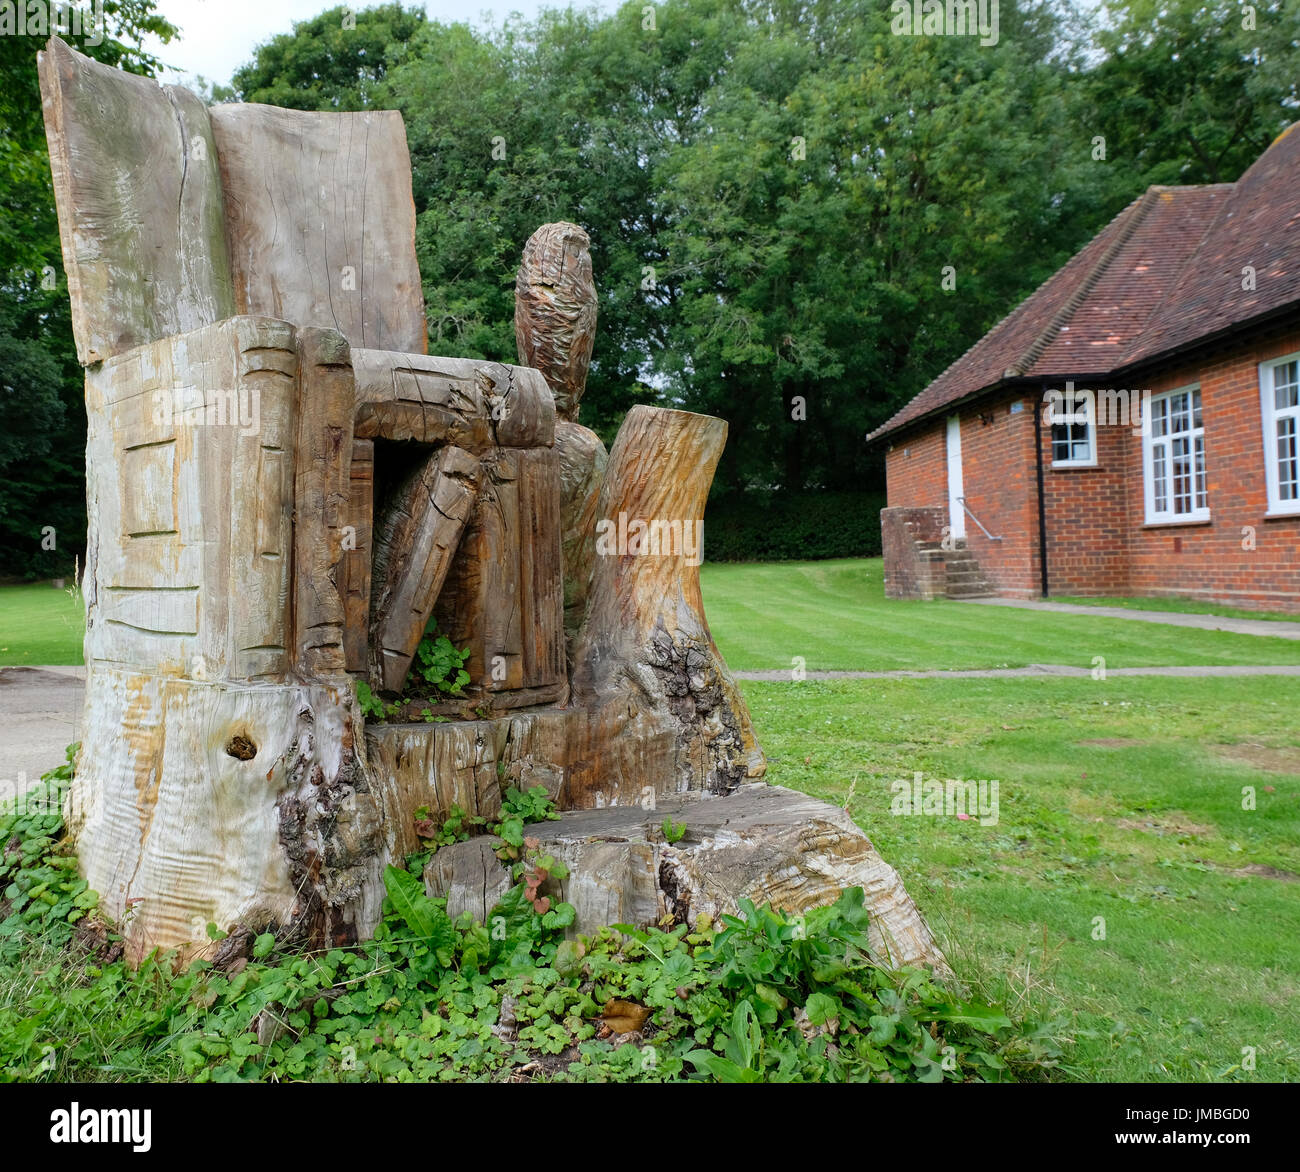 Grande piscine fauteuil avec books et owl, sculpté par une tronçonneuse d'un tronc d'arbre Banque D'Images